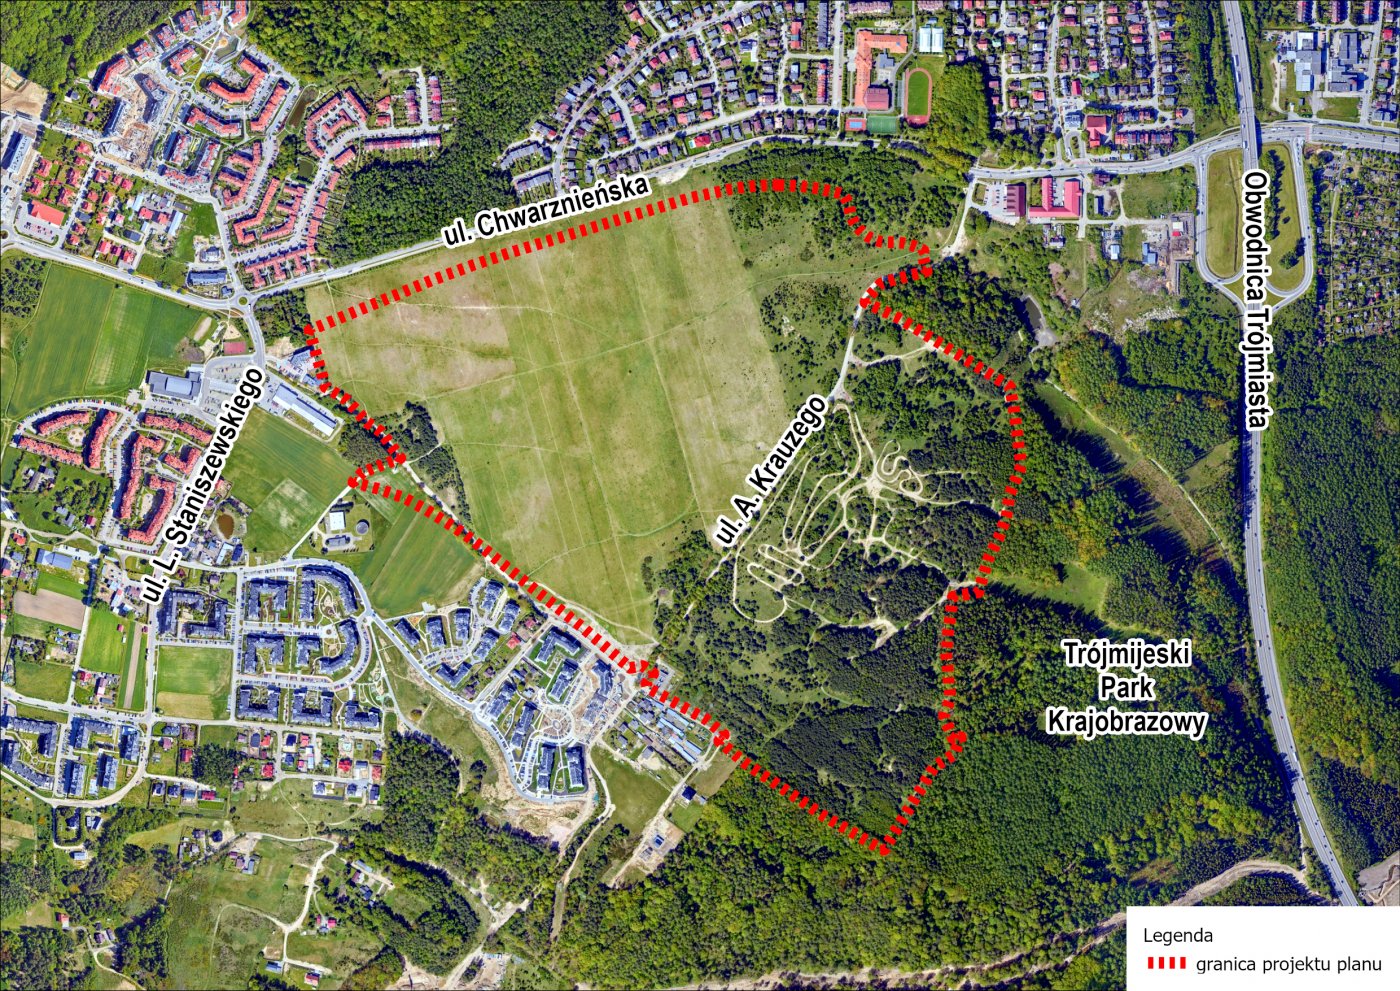 Fragment dynamicznie rozwijającej się dzielnicy Chwarzno-Wiczlino, którego dotyczy projekt planu